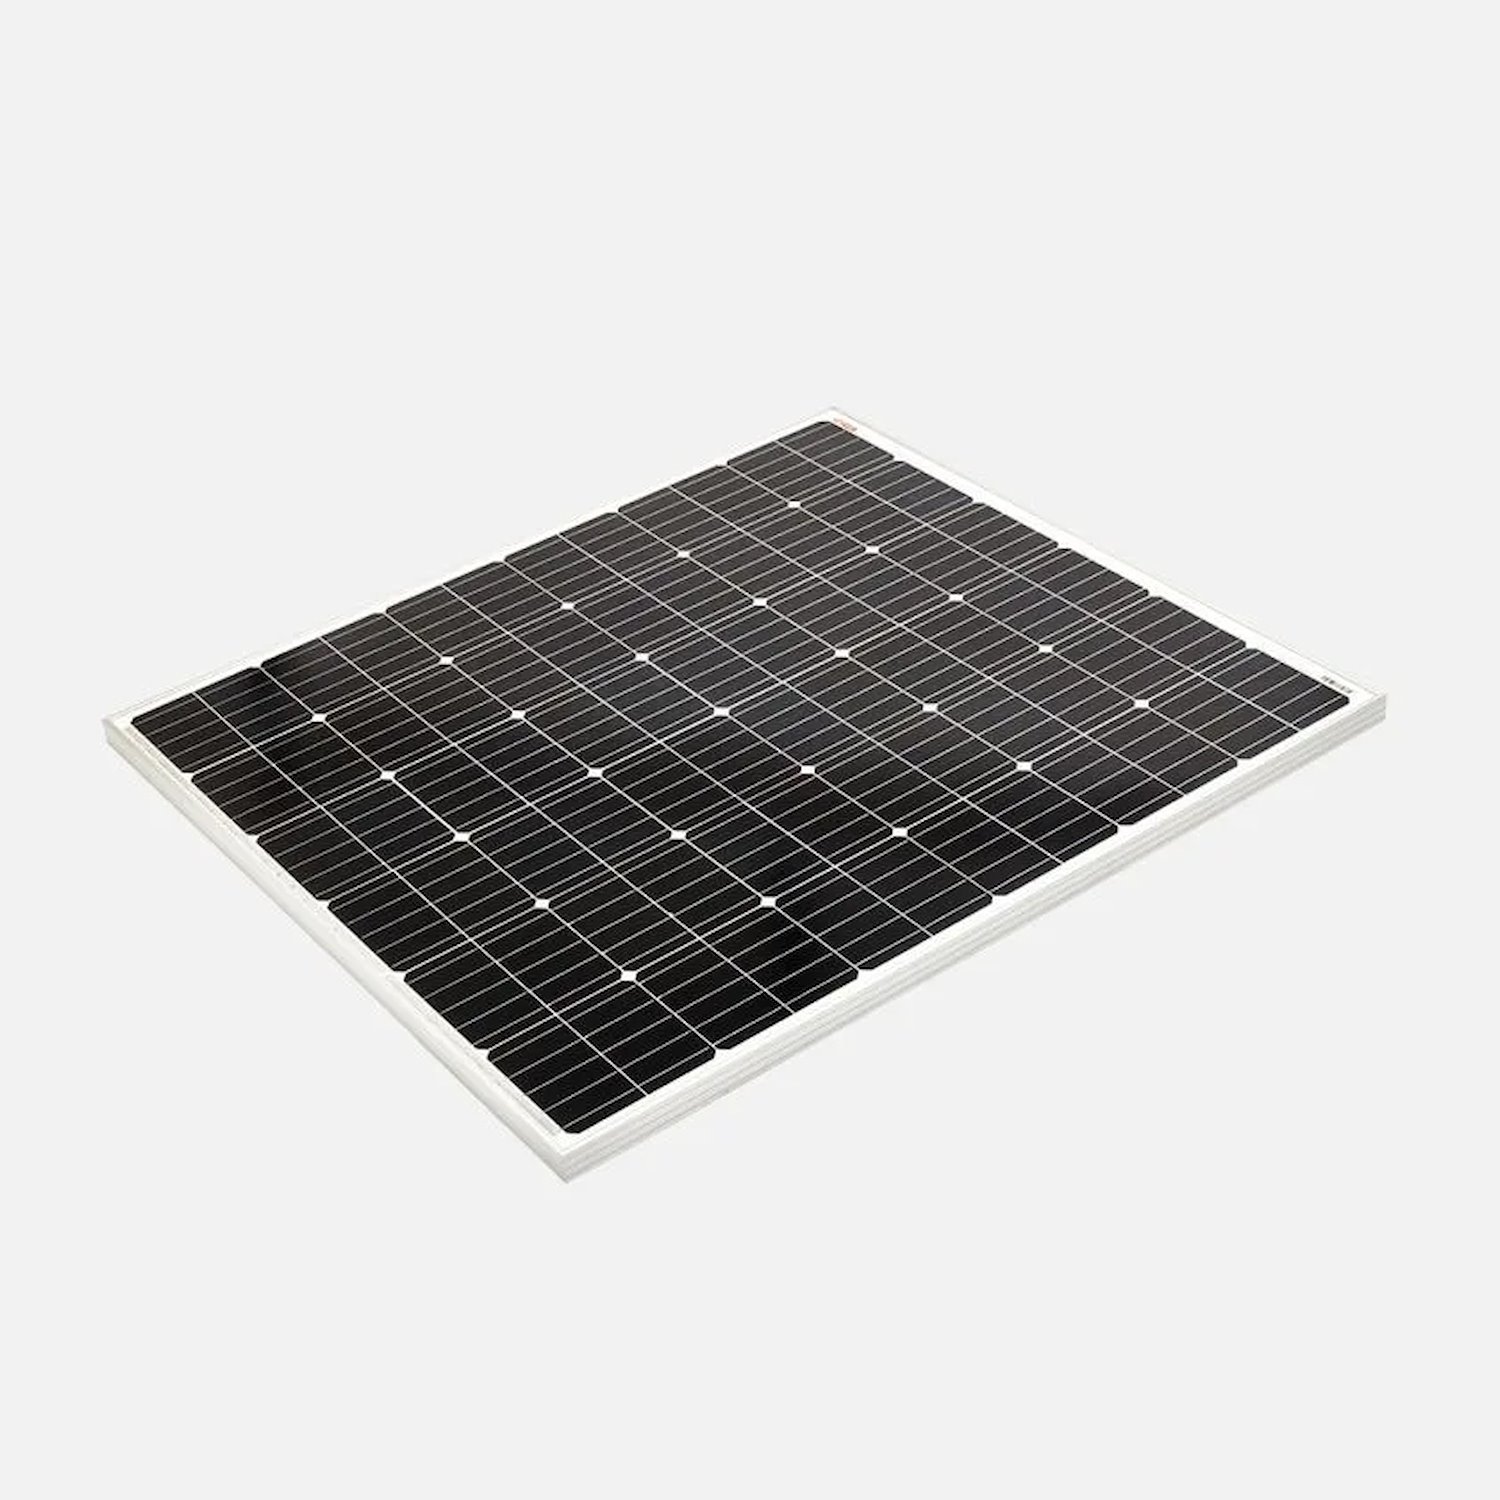 SMSP1200 200 Watt Solar Panel